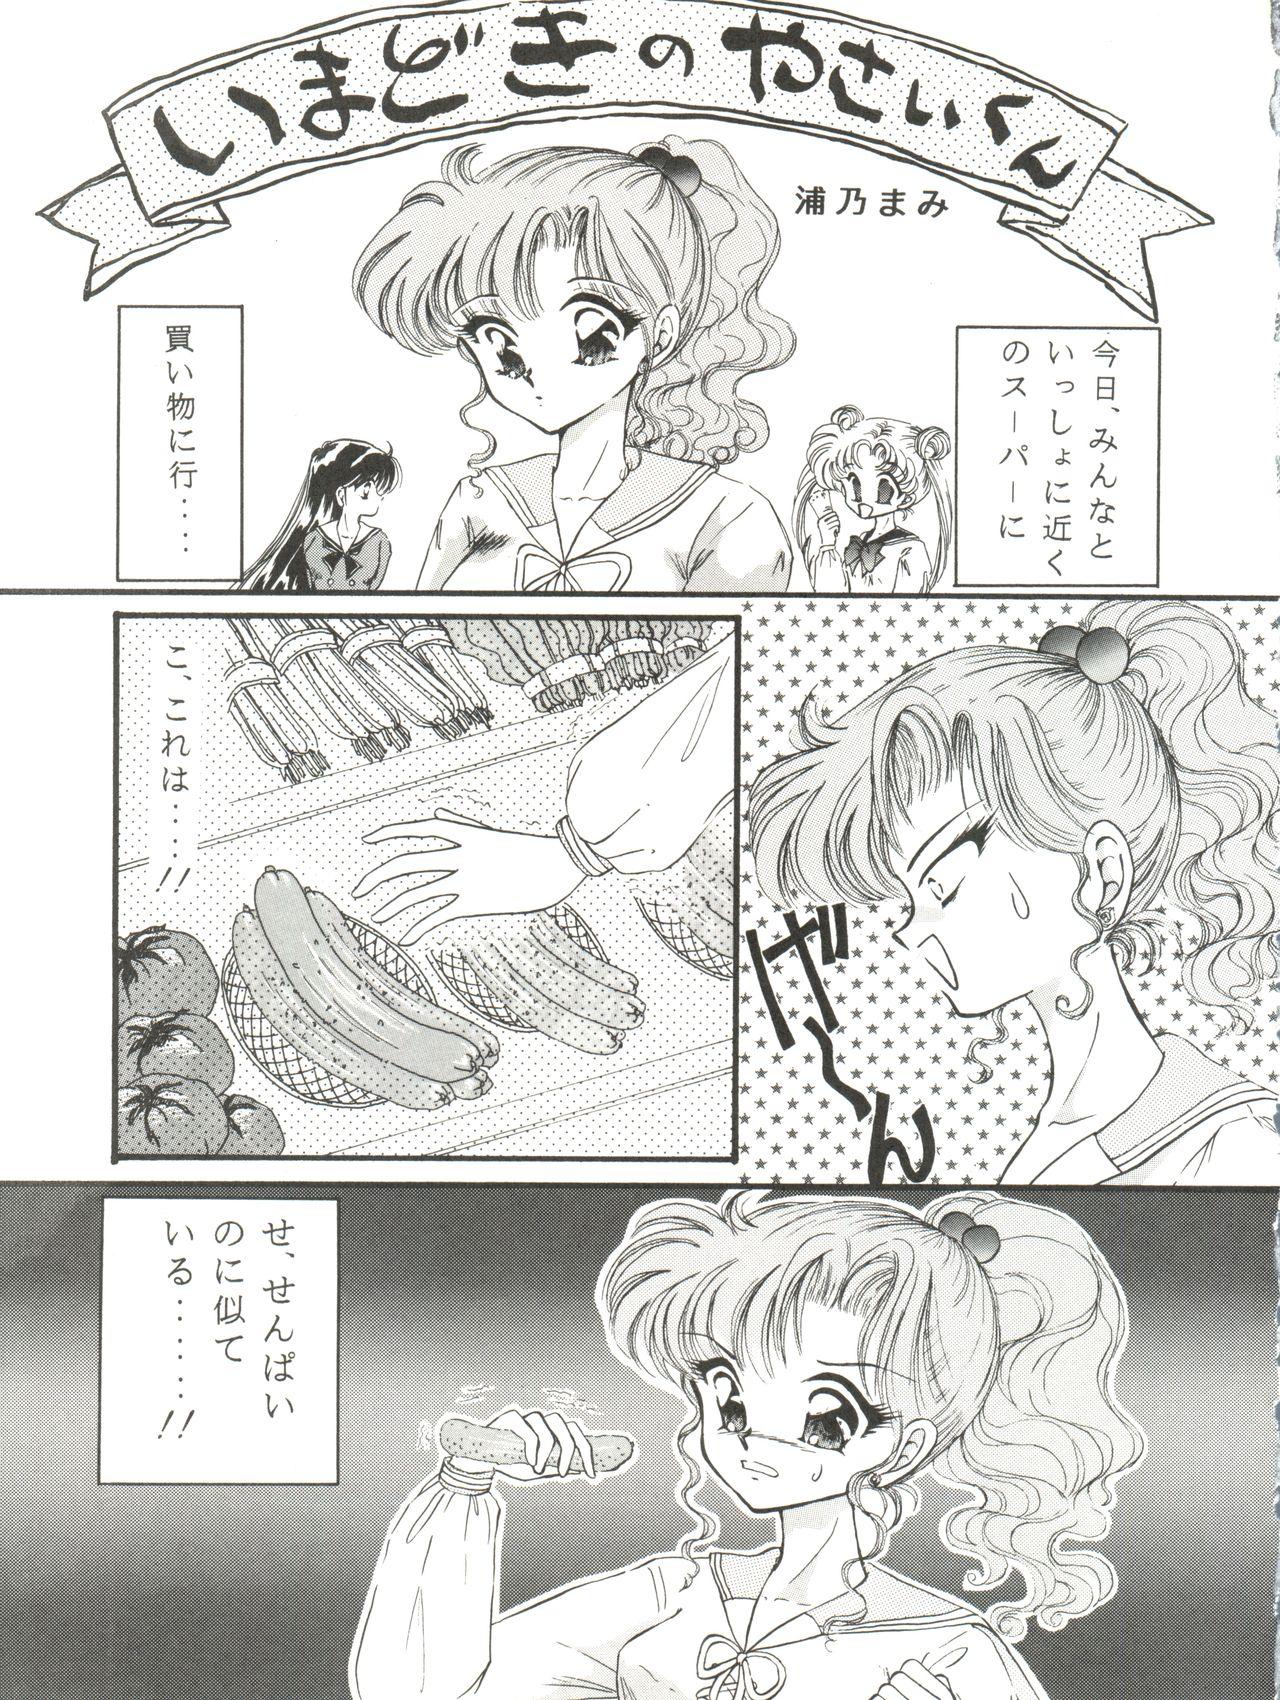 Cowgirl Kangethu Hien Vol. 5 - Sailor moon Bigboobs - Page 5